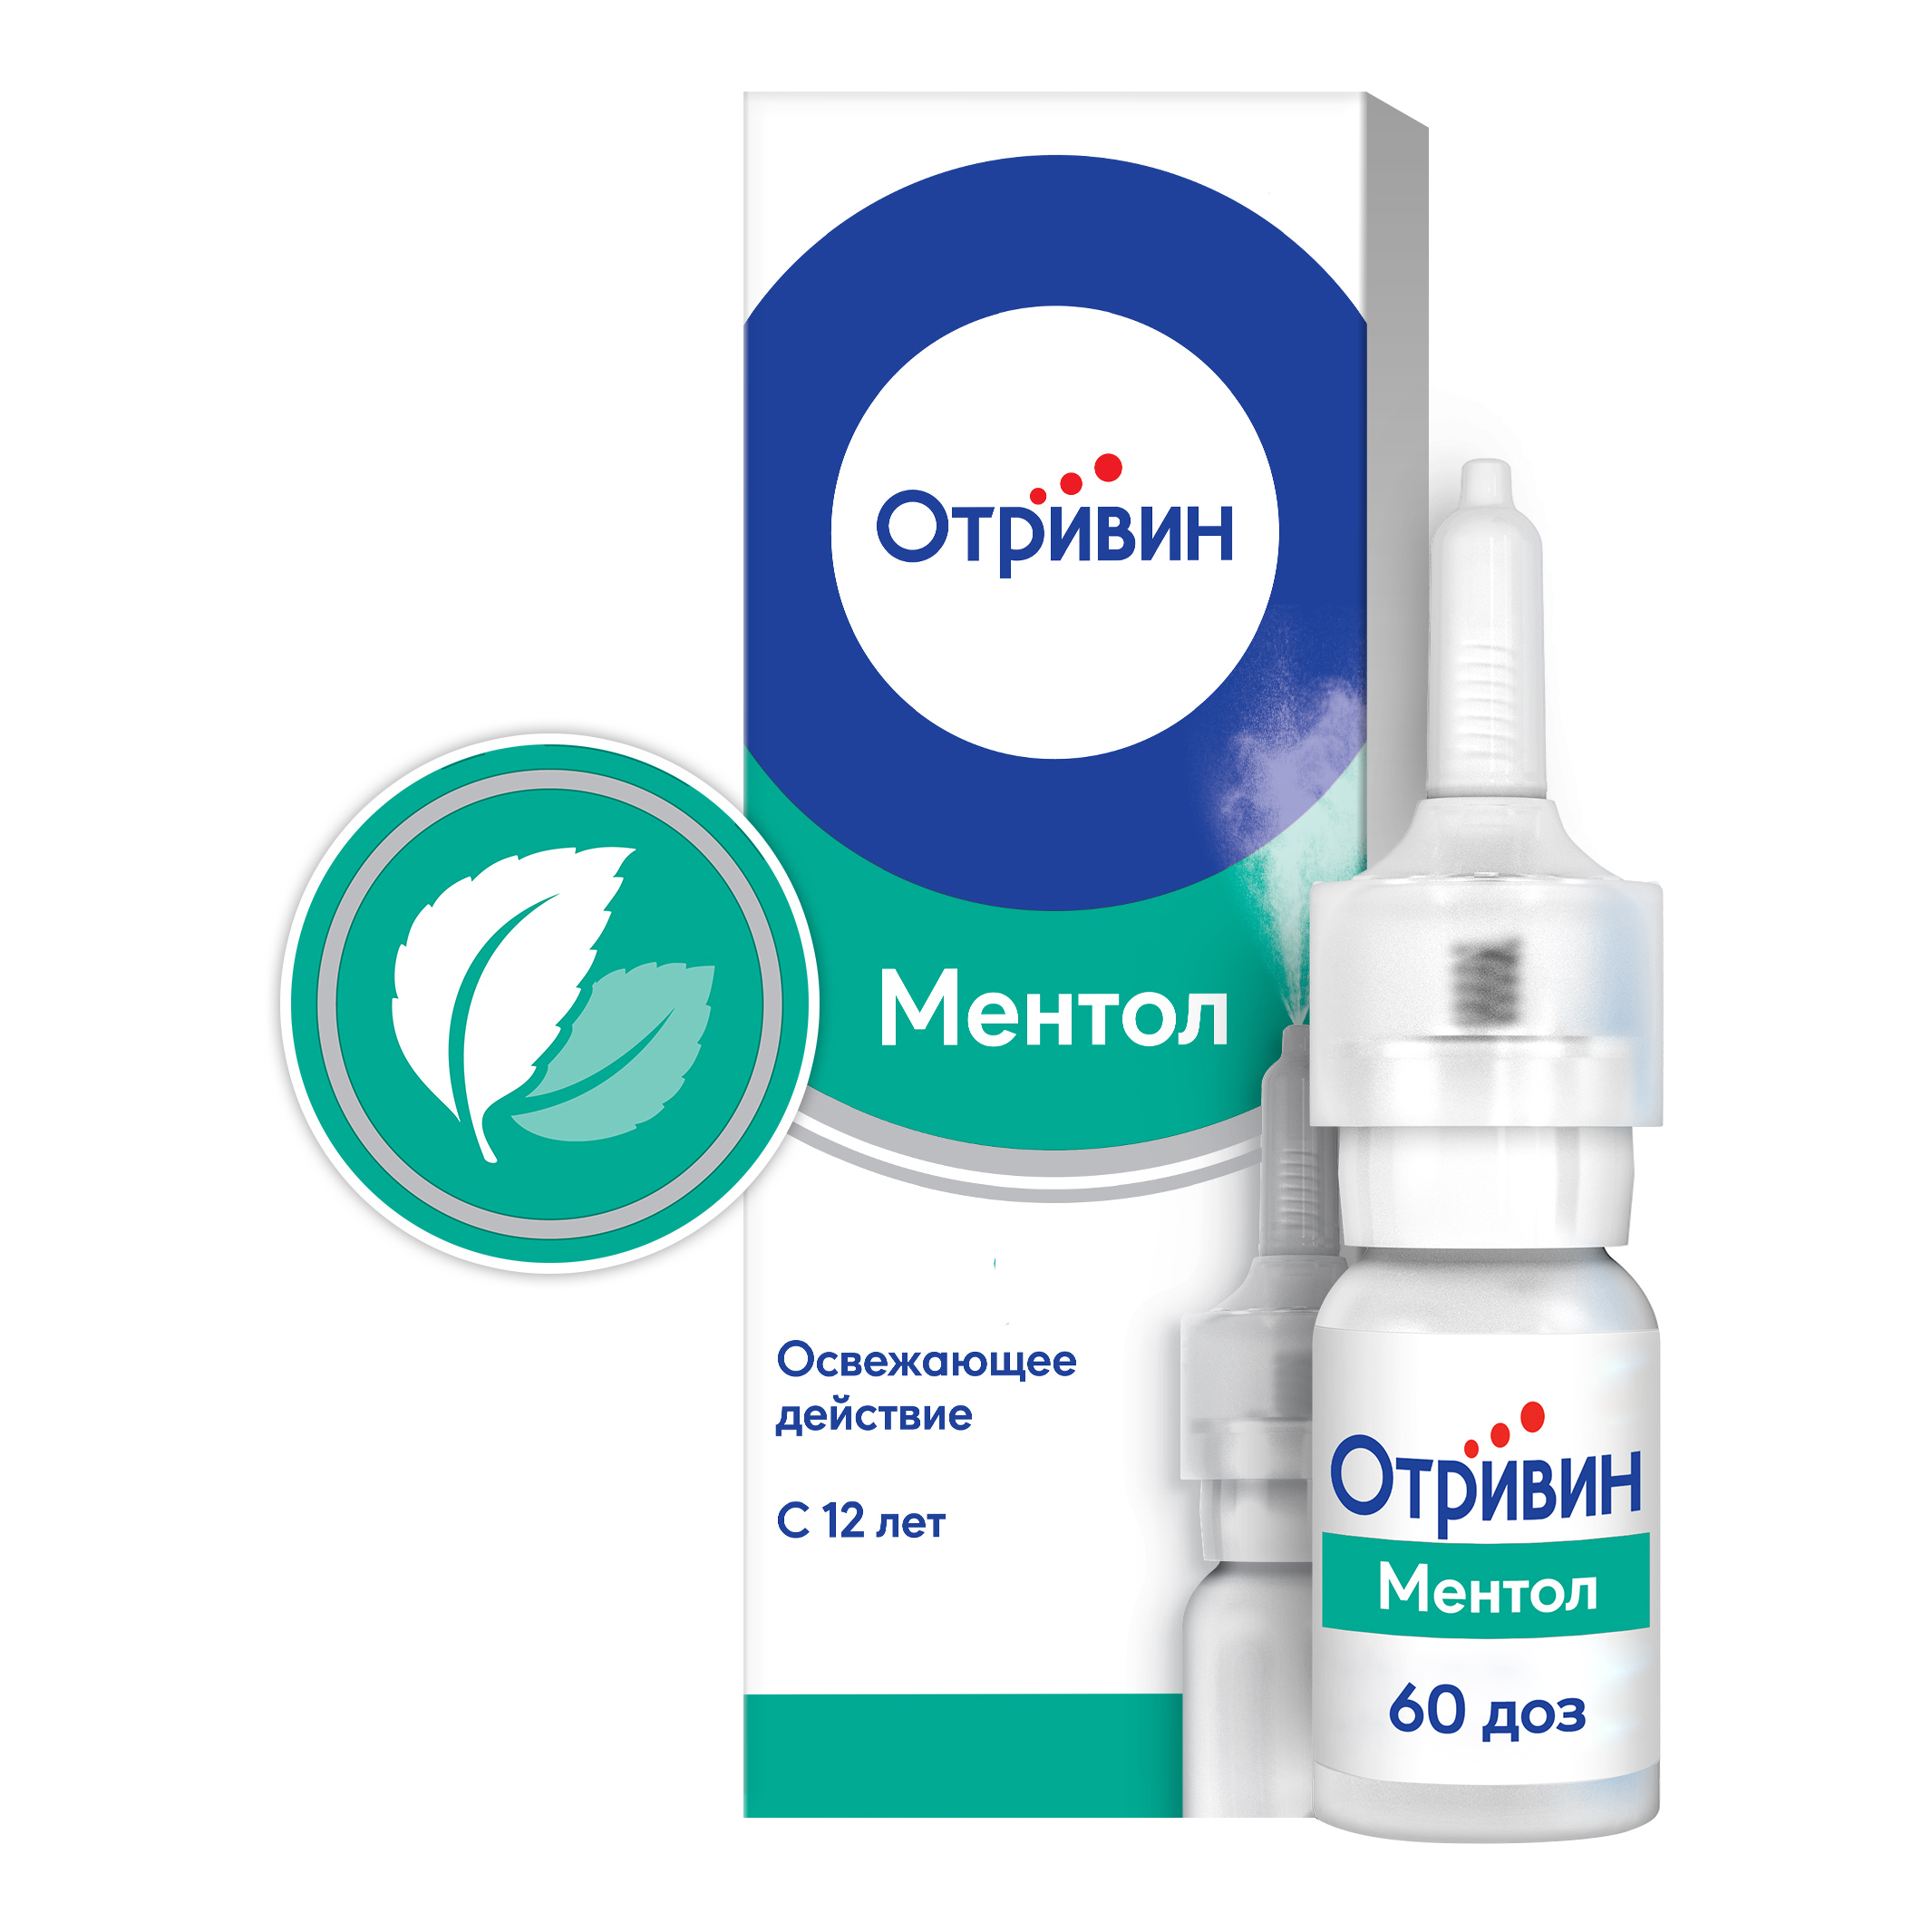 Отривин Ментол спрей для носа при насморке и заложенности носа, ксилометазолин 0,1%, 10 мл отривин для детей спрей для носа при насморке и заложенности носа ксилометазолин 0 05% 10 мл